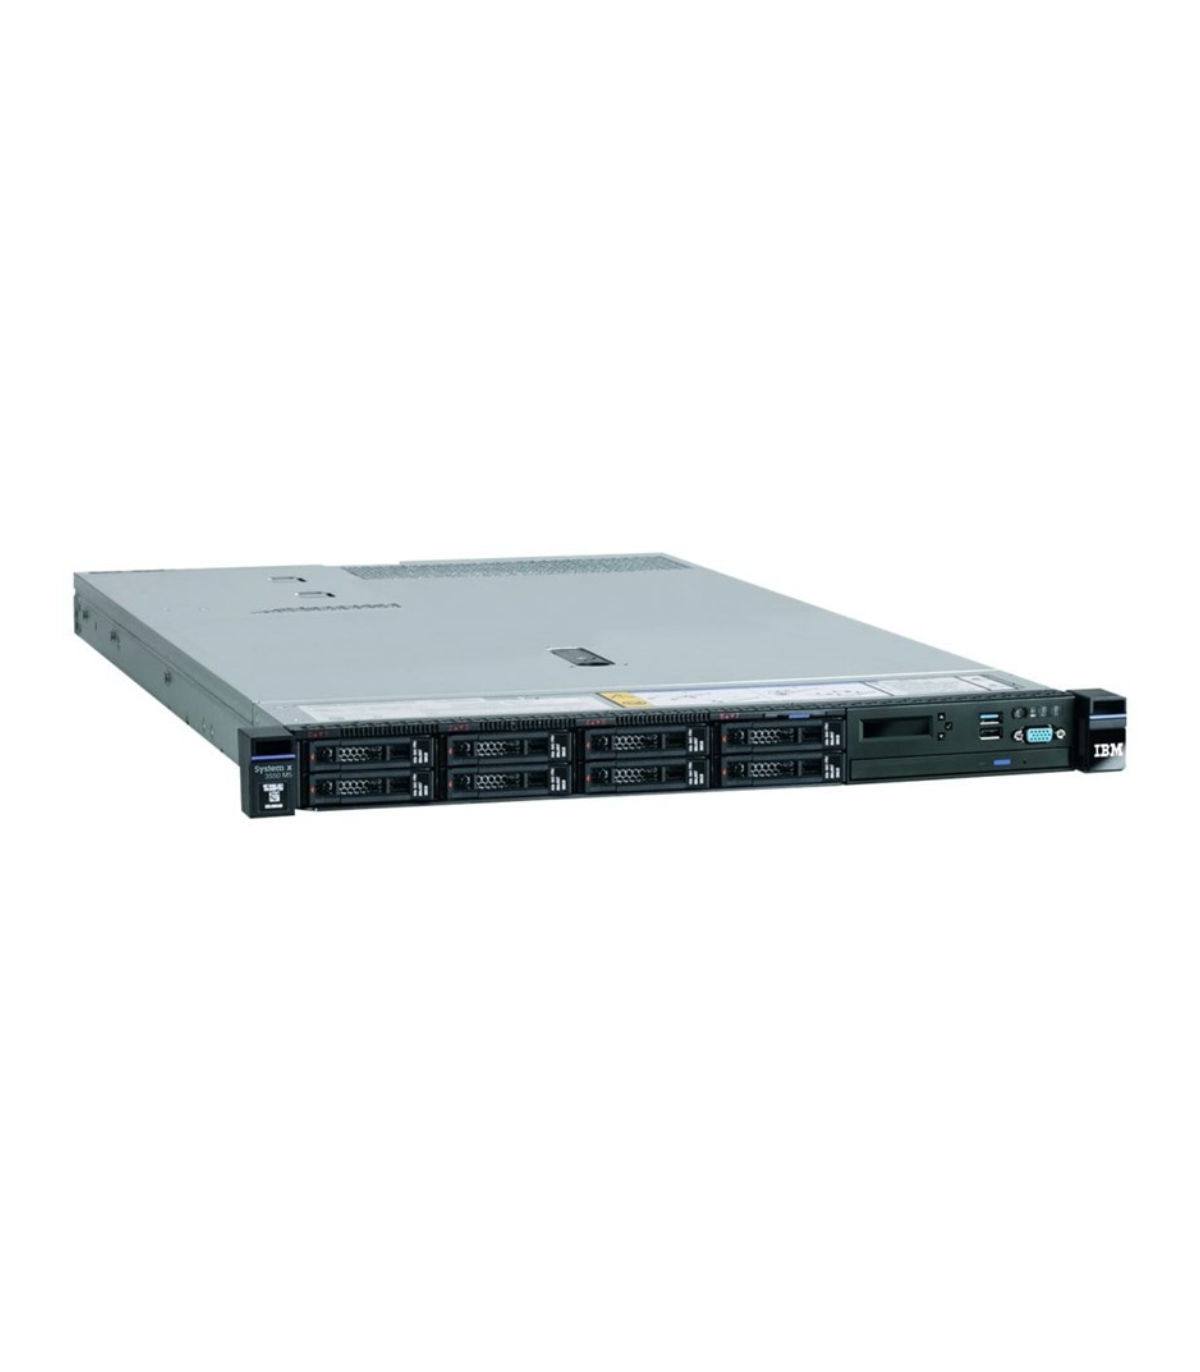 LENOVO X3550 M5 2X10C E5-2660 V3 2.60 GHz 32GB 8X2,5" M5210 1GB BAT 2X750W IMM KEY